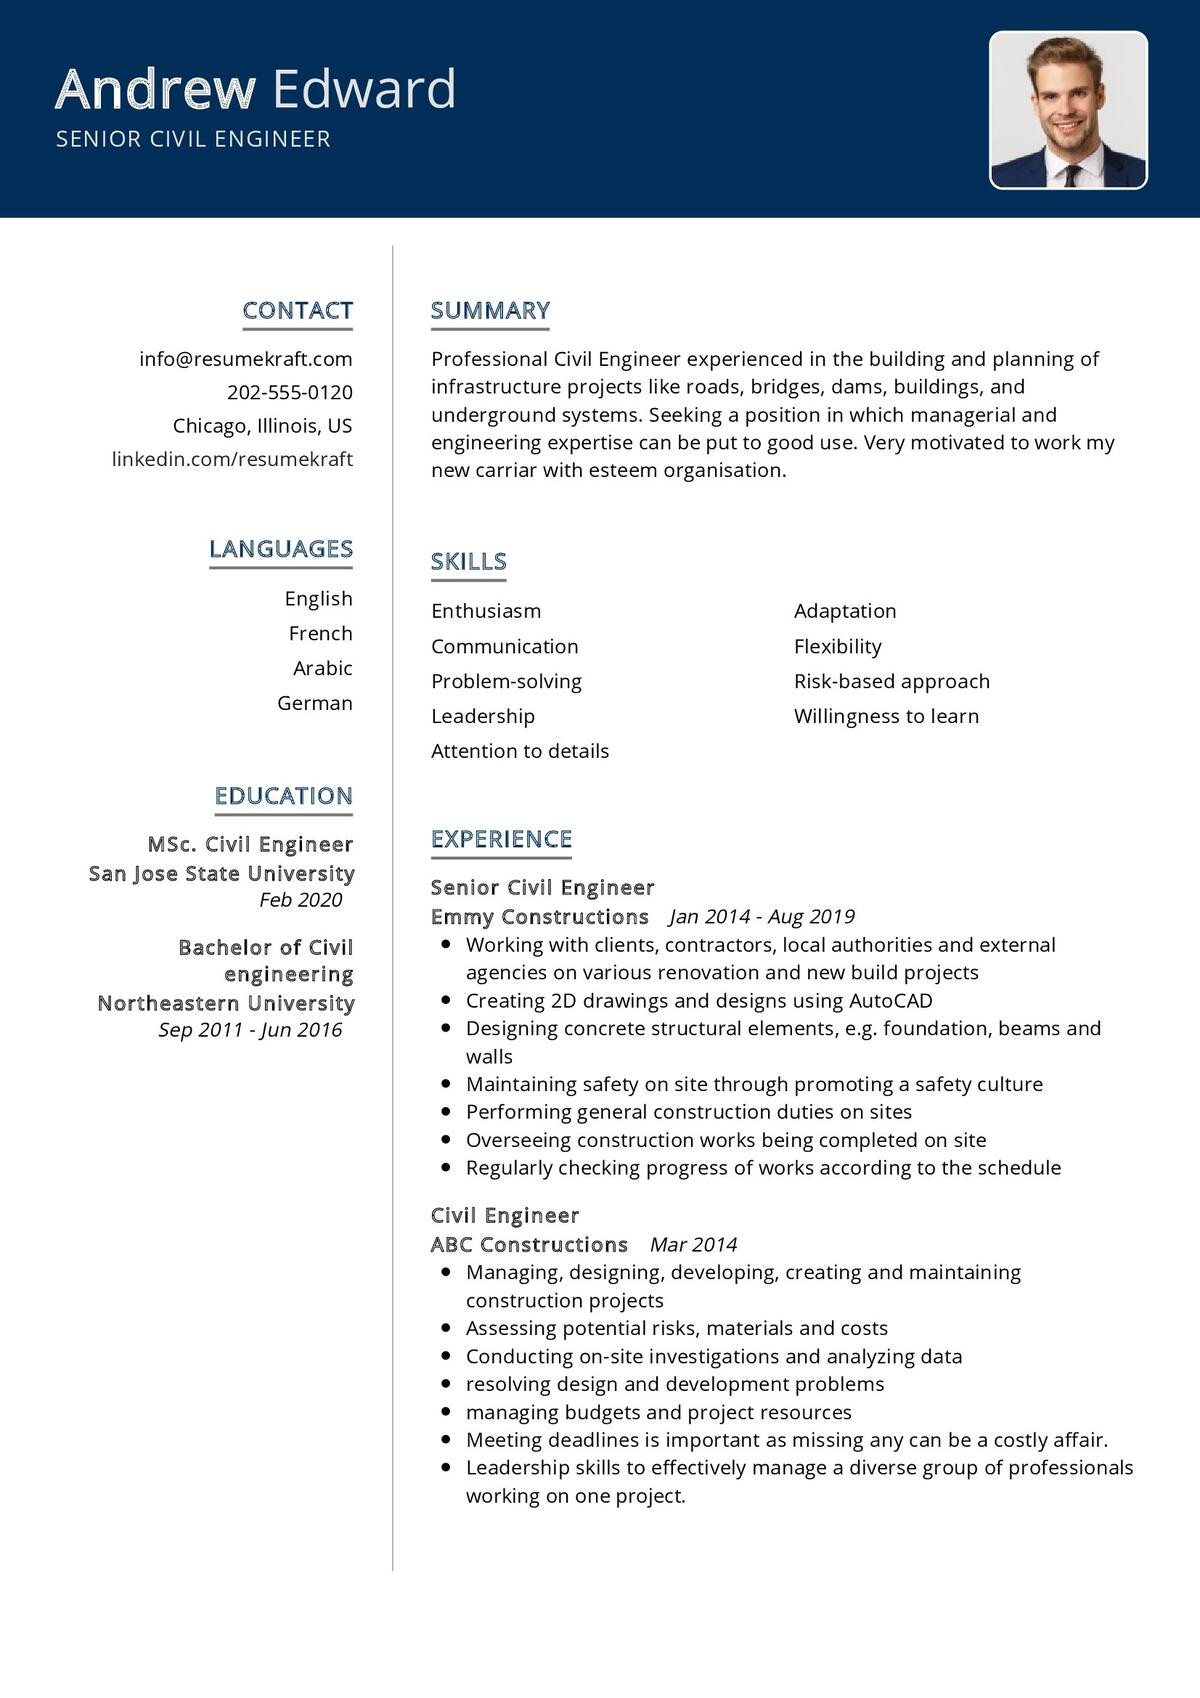 Chronological Resume Sample for Civil Engineer Senior Civil Engineer Resume Sample 2021 Writing Guide – Resumekraft